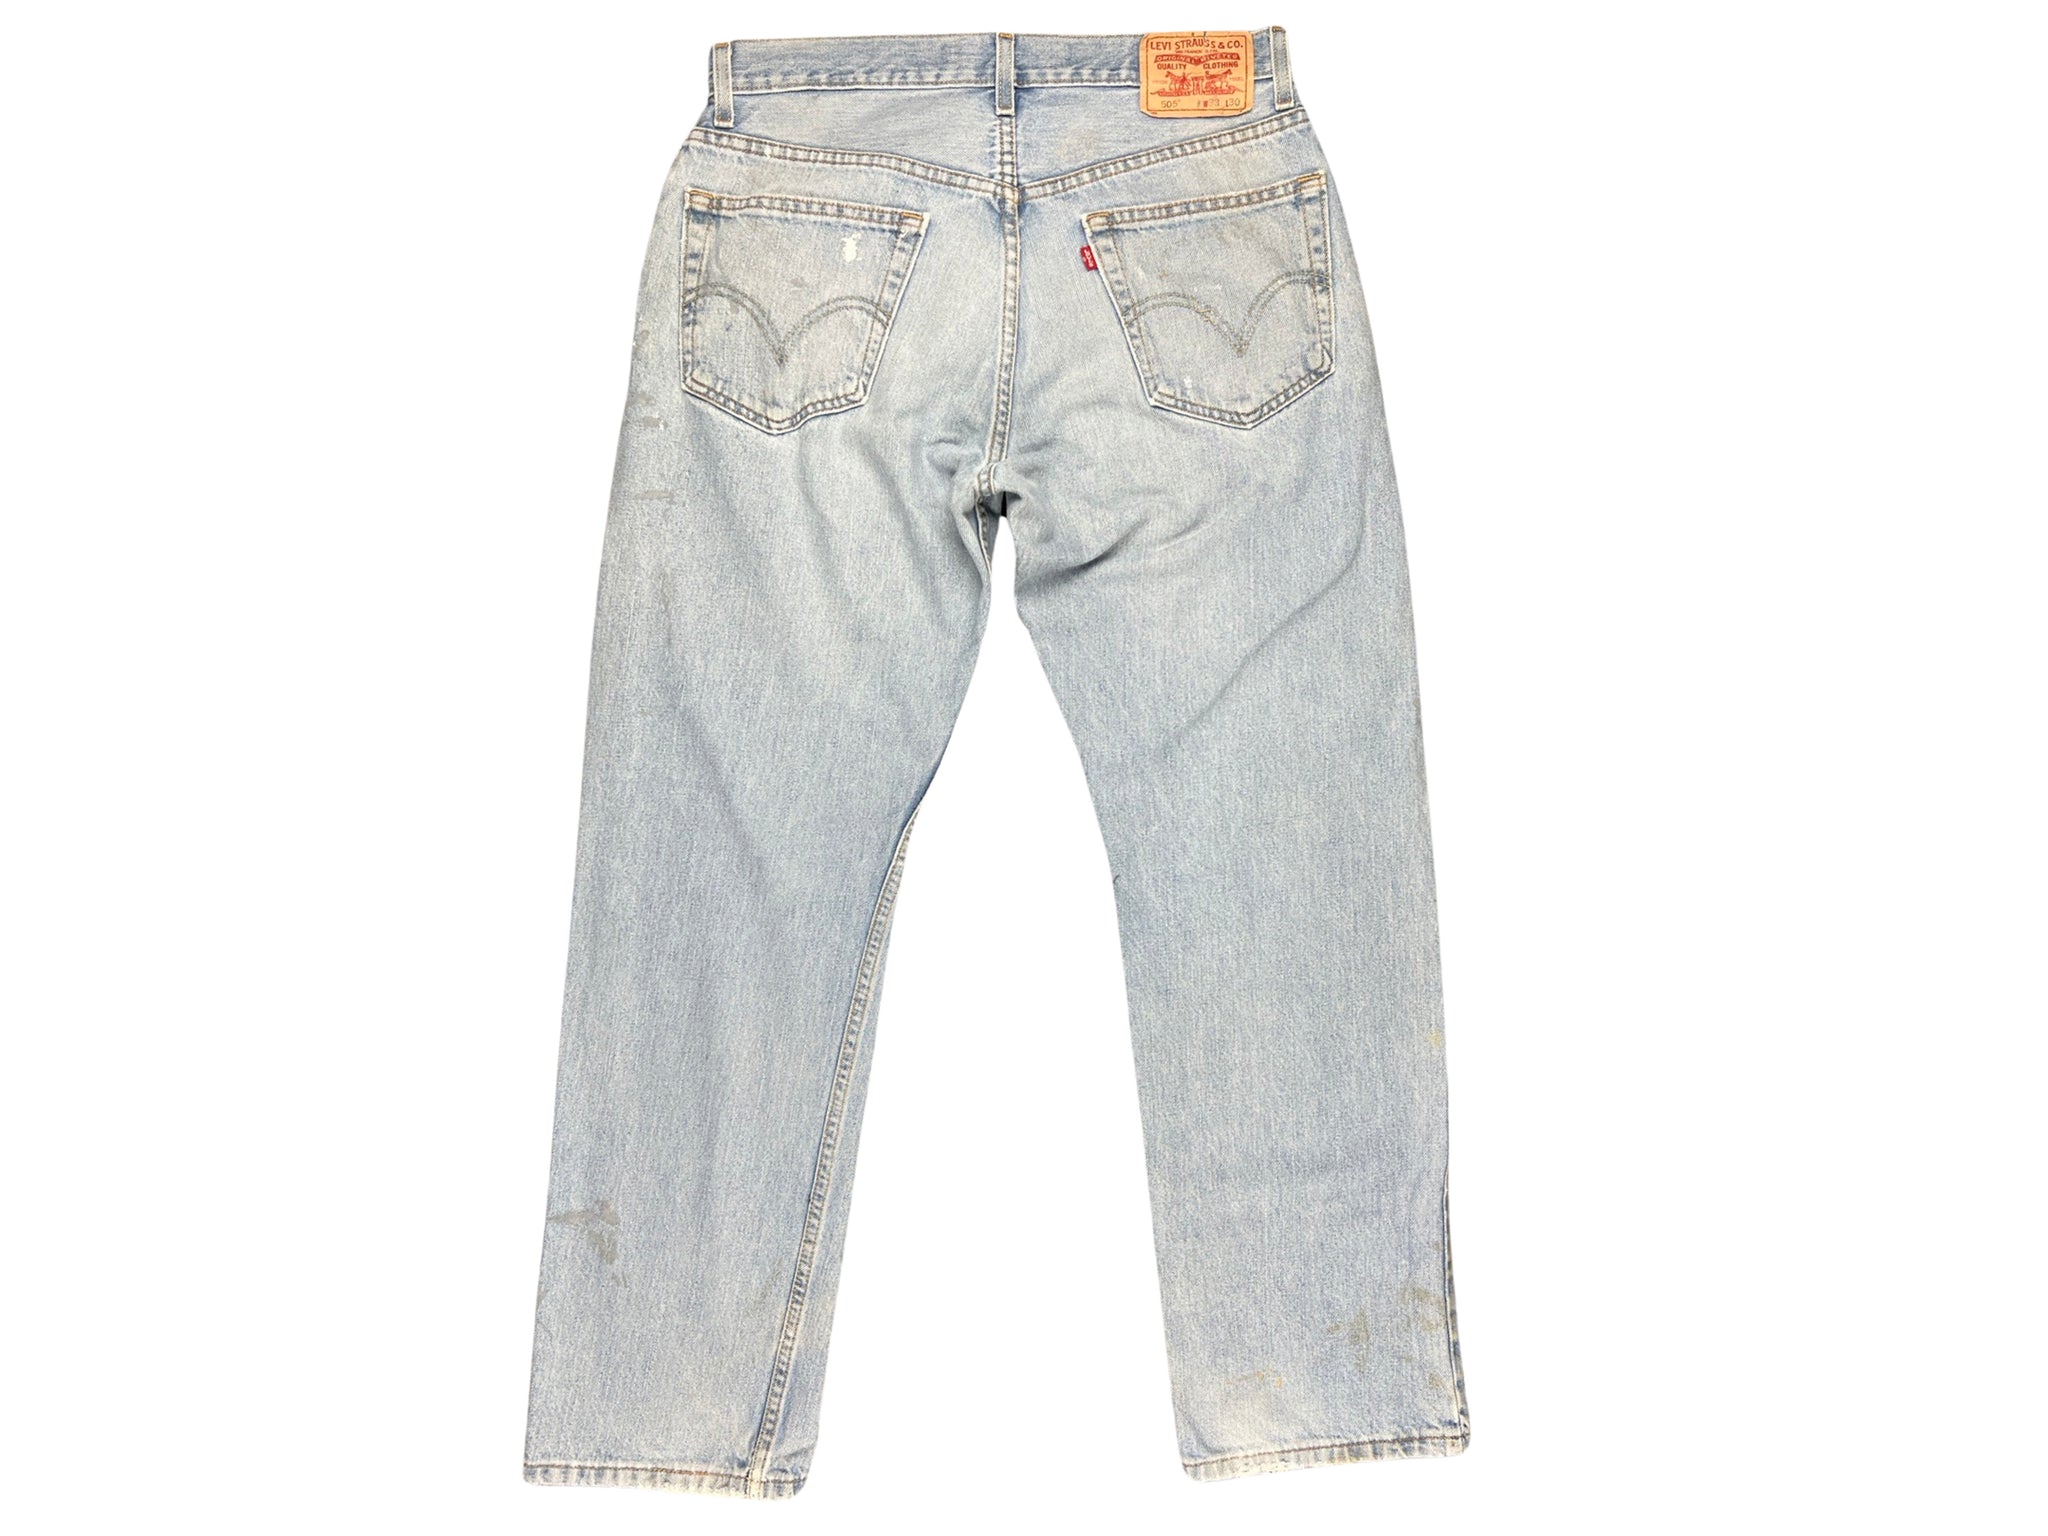 Levis 501 Paint Splattered Jeans ( 32" x 29")